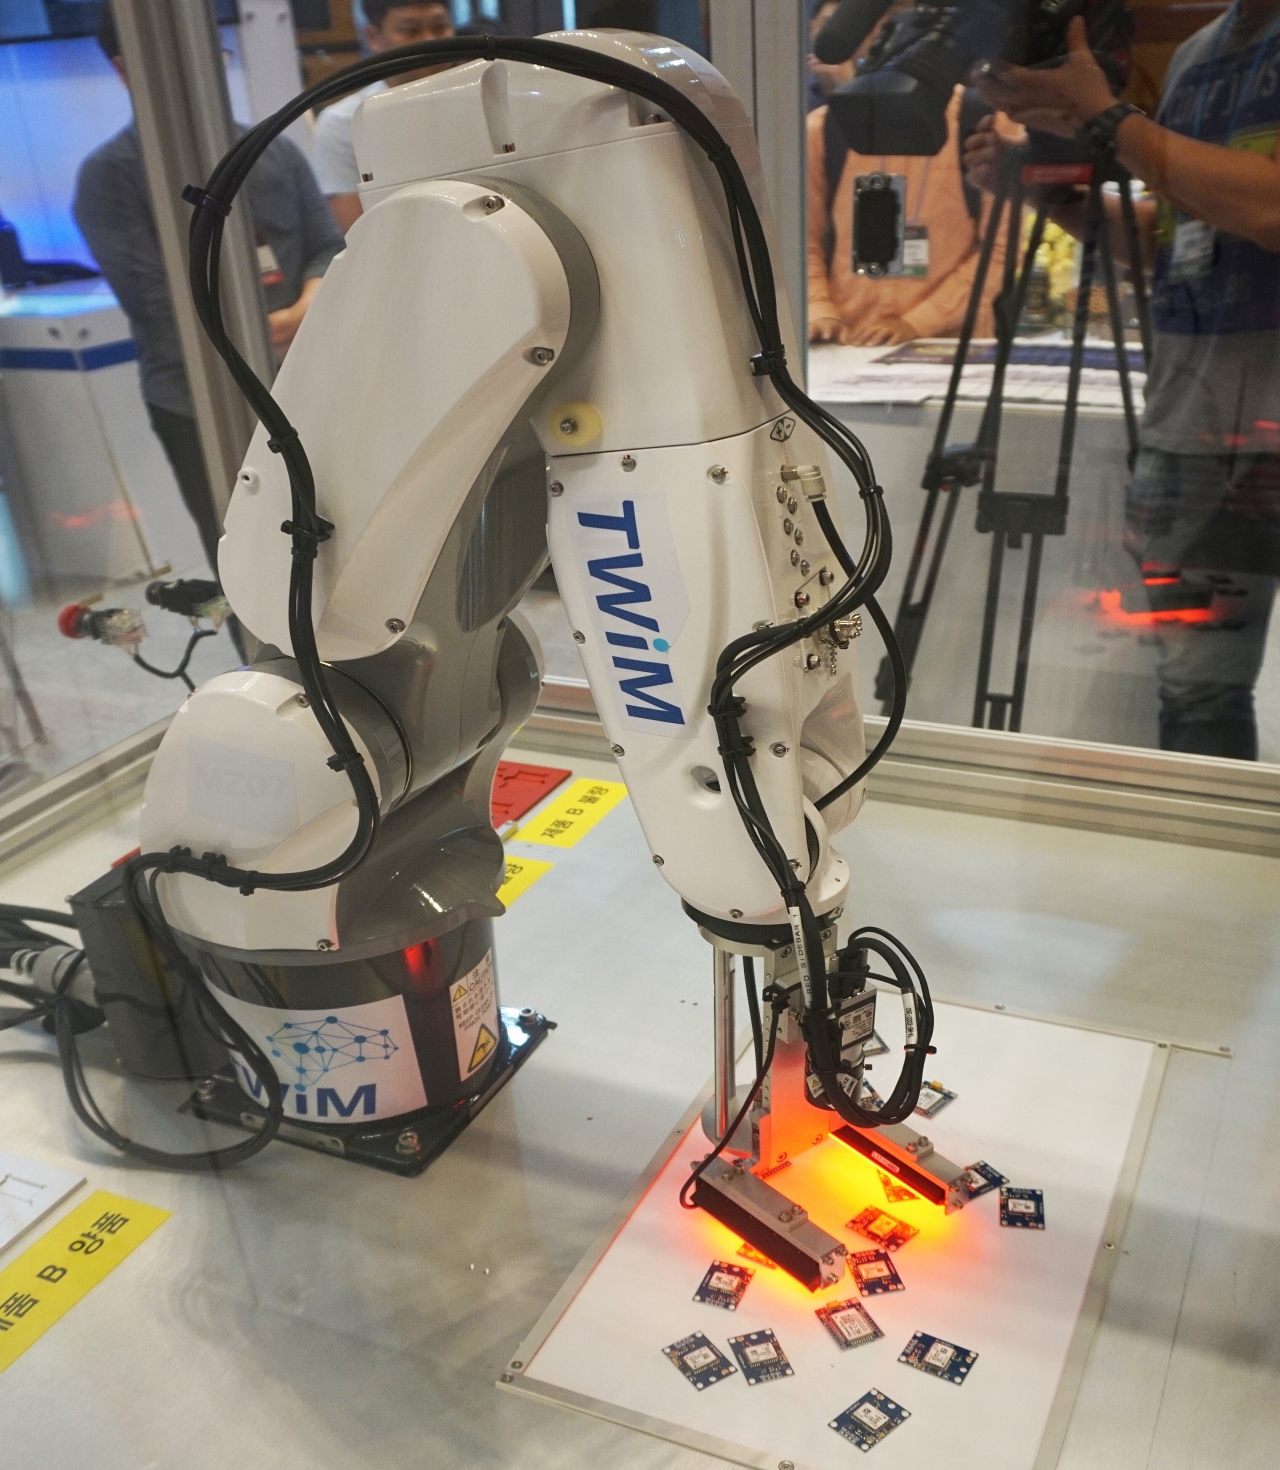 트윔의 AI 머신비전을 탑재한 산업용 로봇의 검사 시연 전경(사진:최광민 기자)